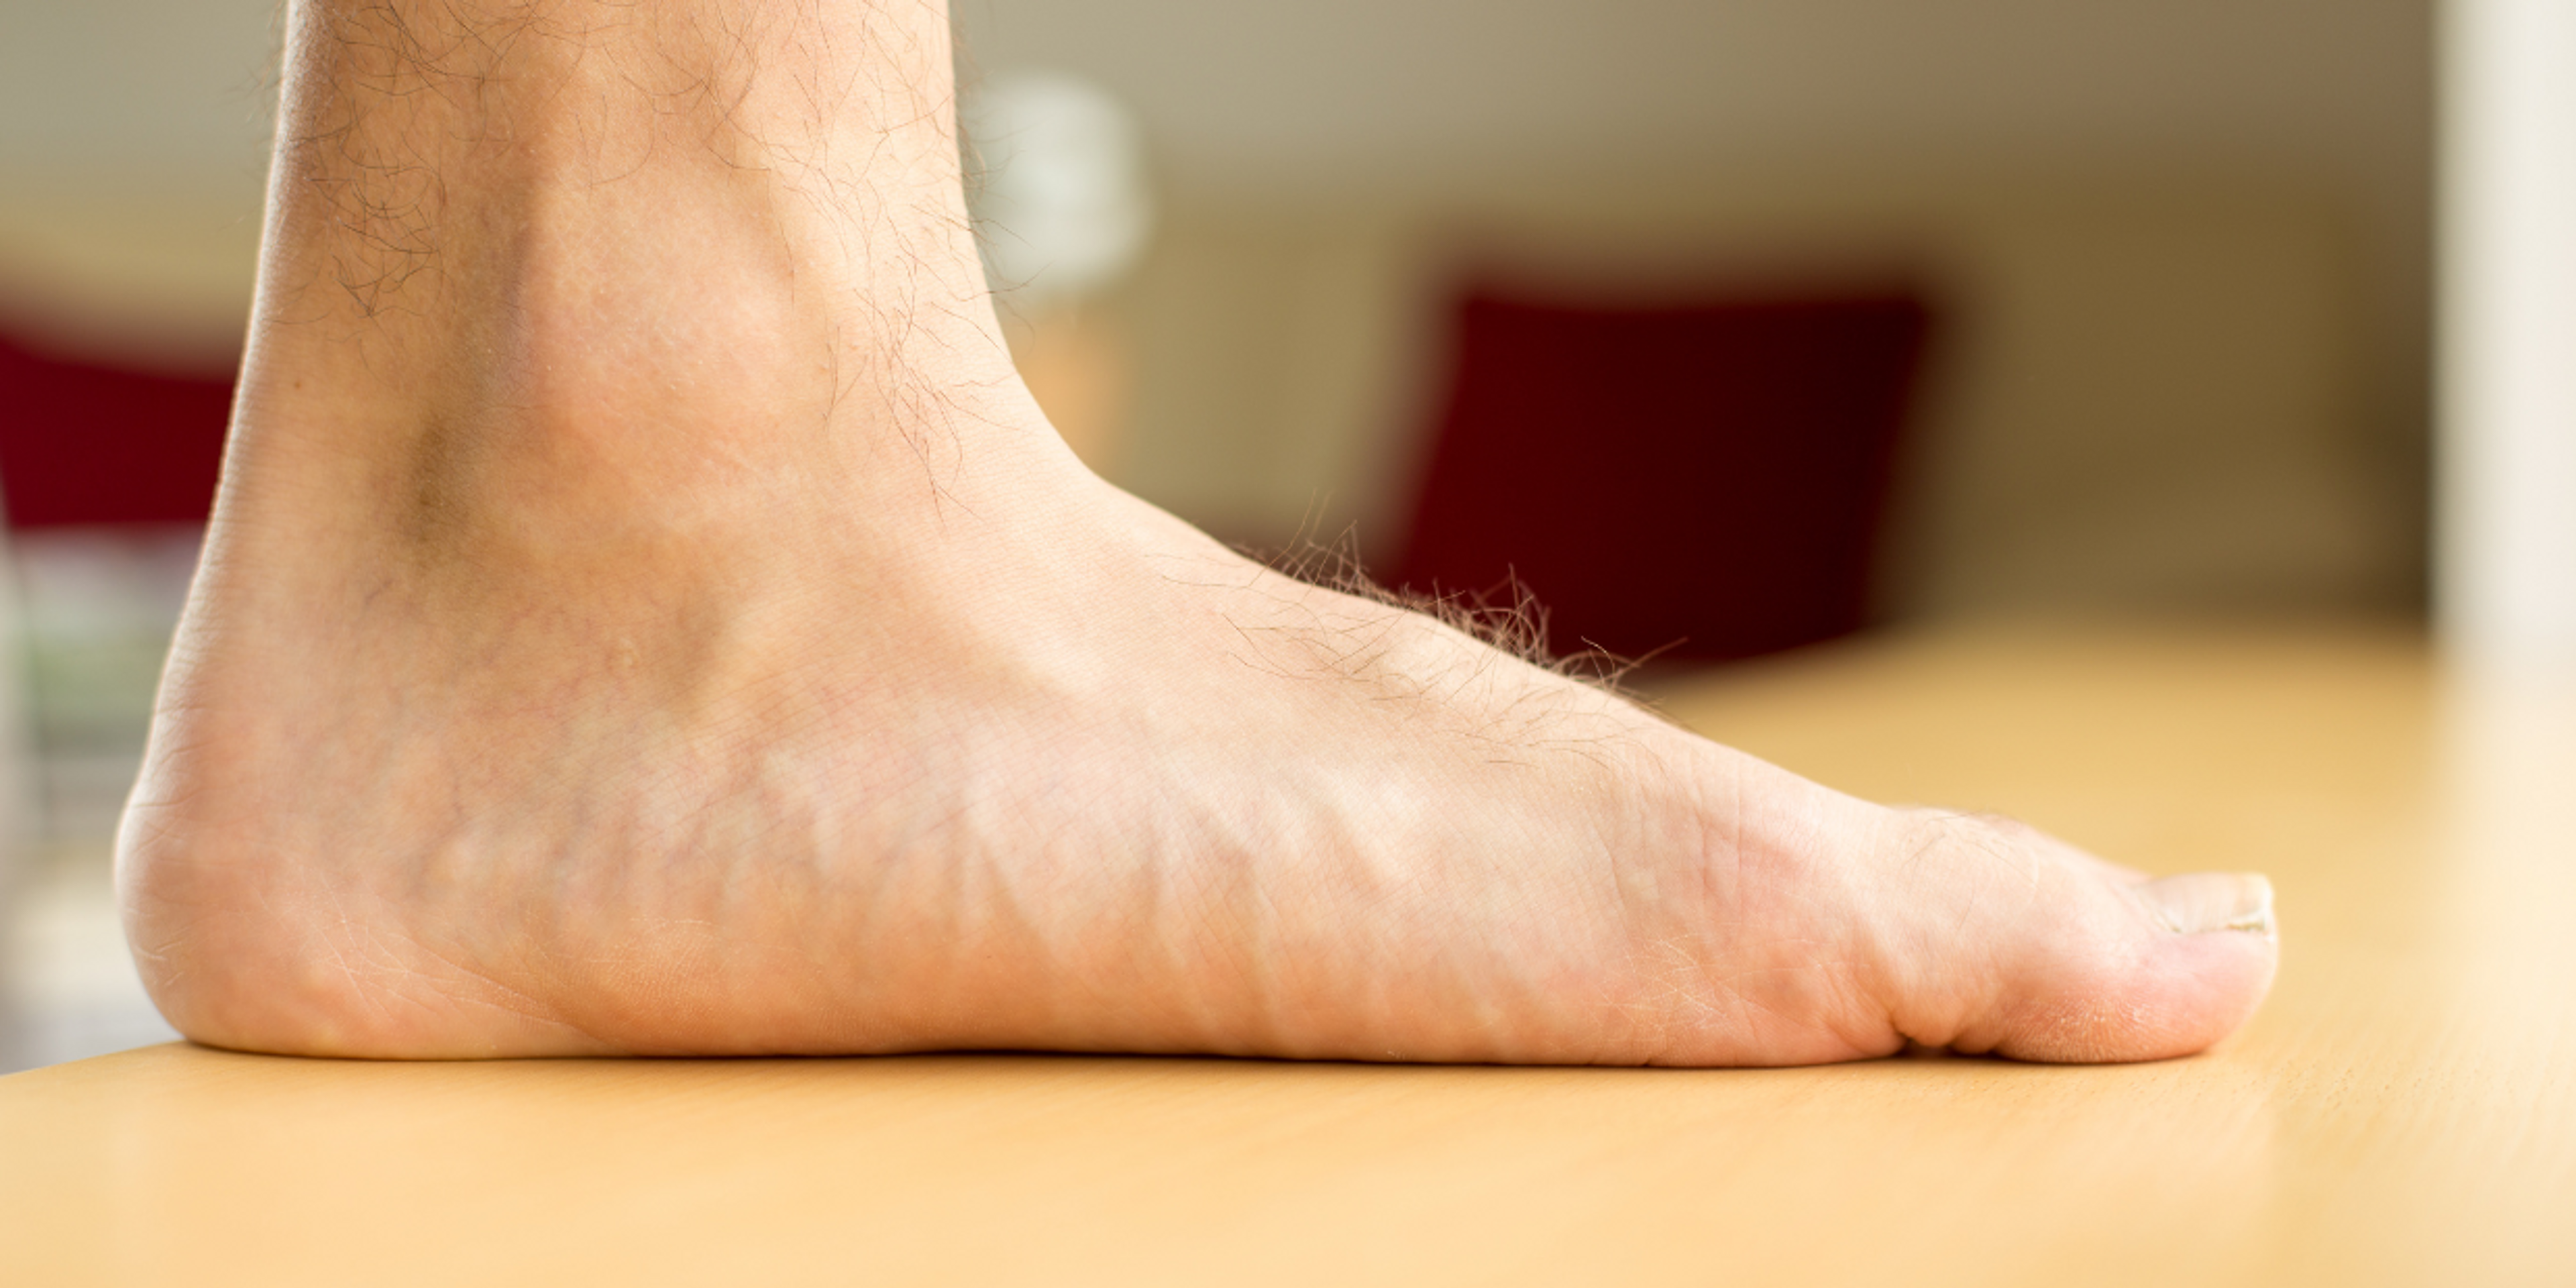 Les pieds plats peuvent vous prédisposer à développer une fasciite plantaire et vous pouvez bénéficier de semelles sur mesure si vous avez cette forme de pied.